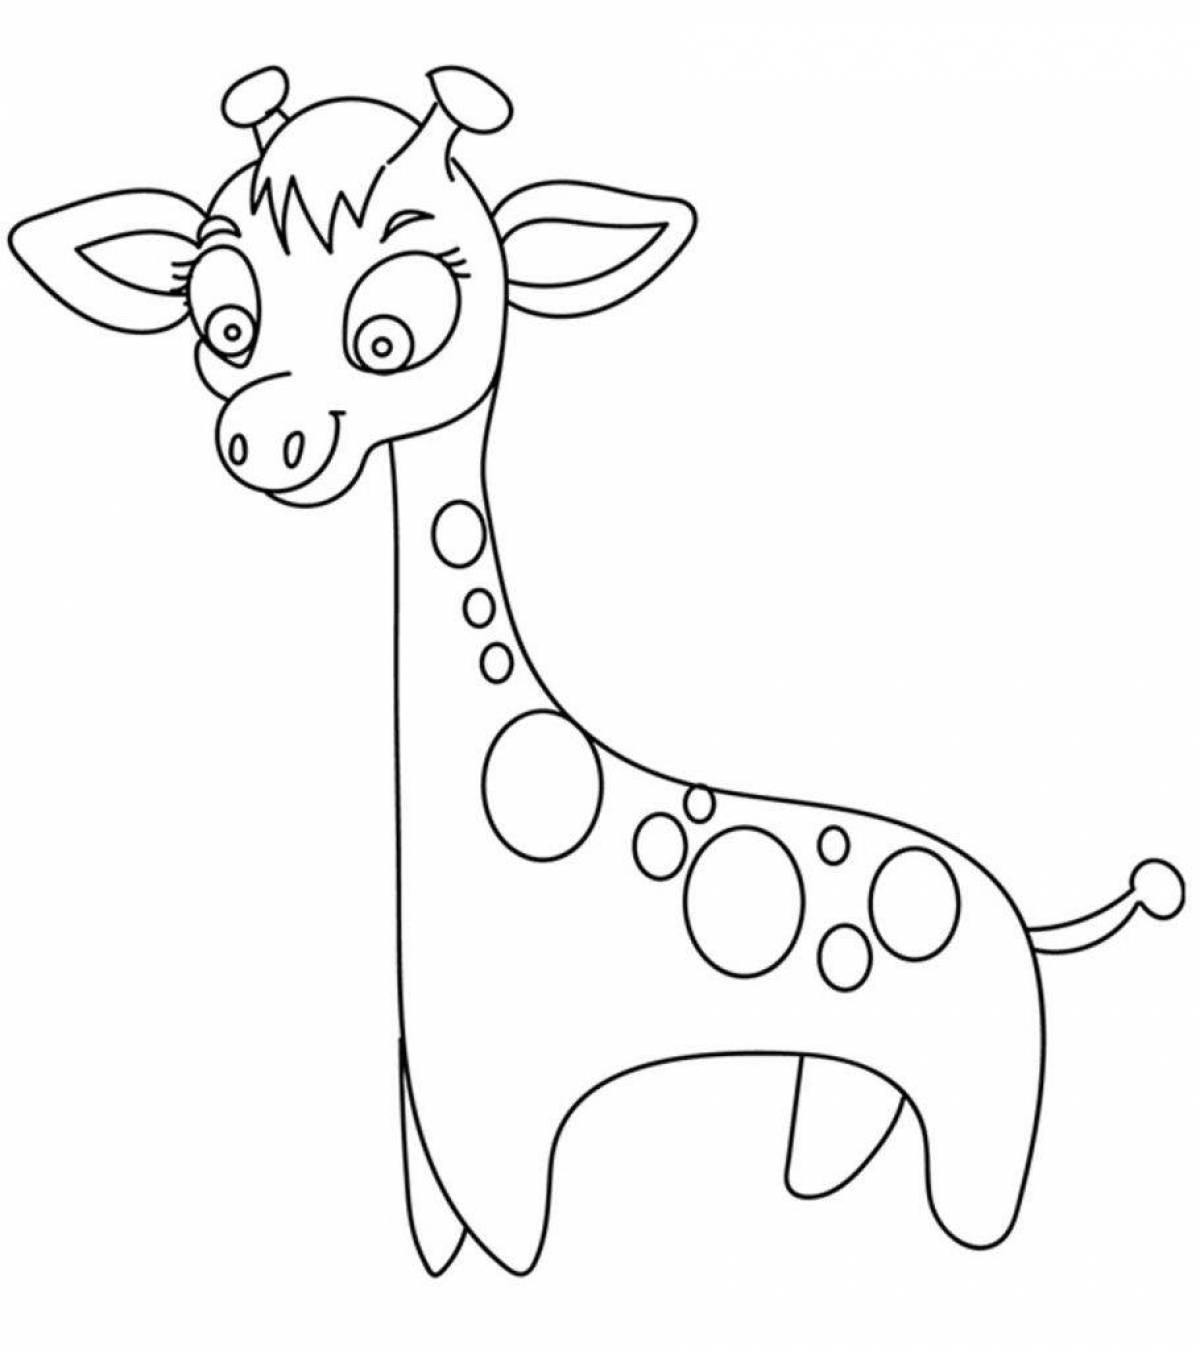 Fantastic giraffe coloring book for kids